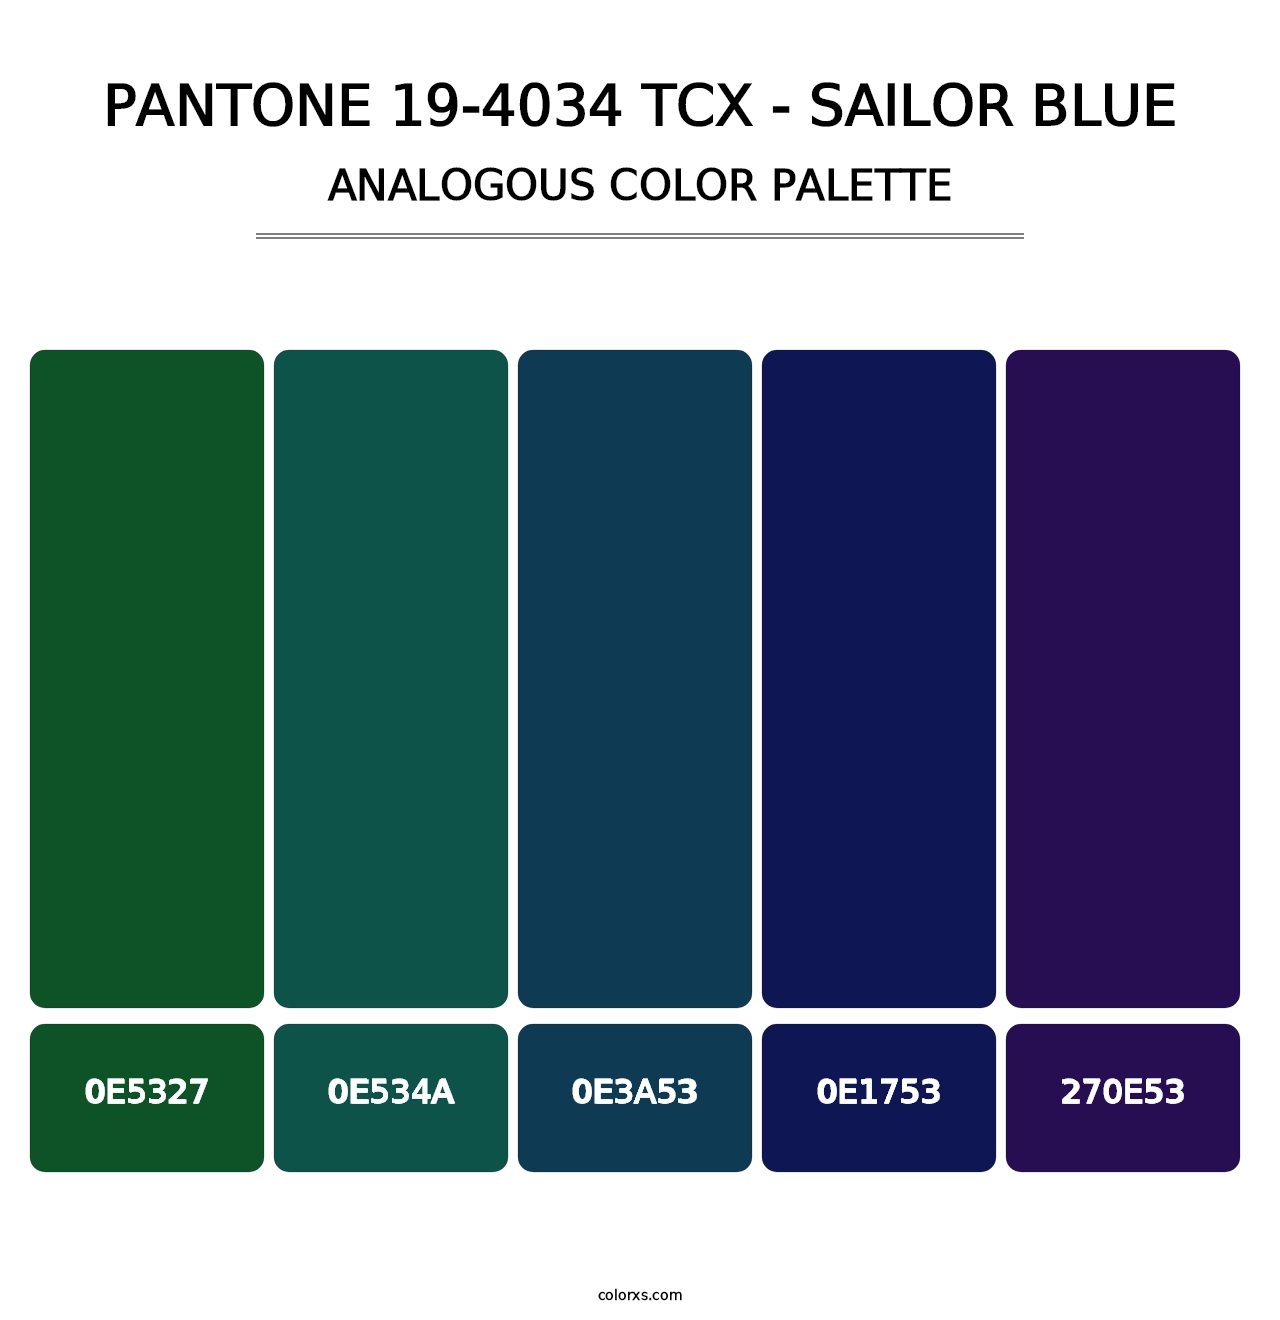 PANTONE 19-4034 TCX - Sailor Blue - Analogous Color Palette